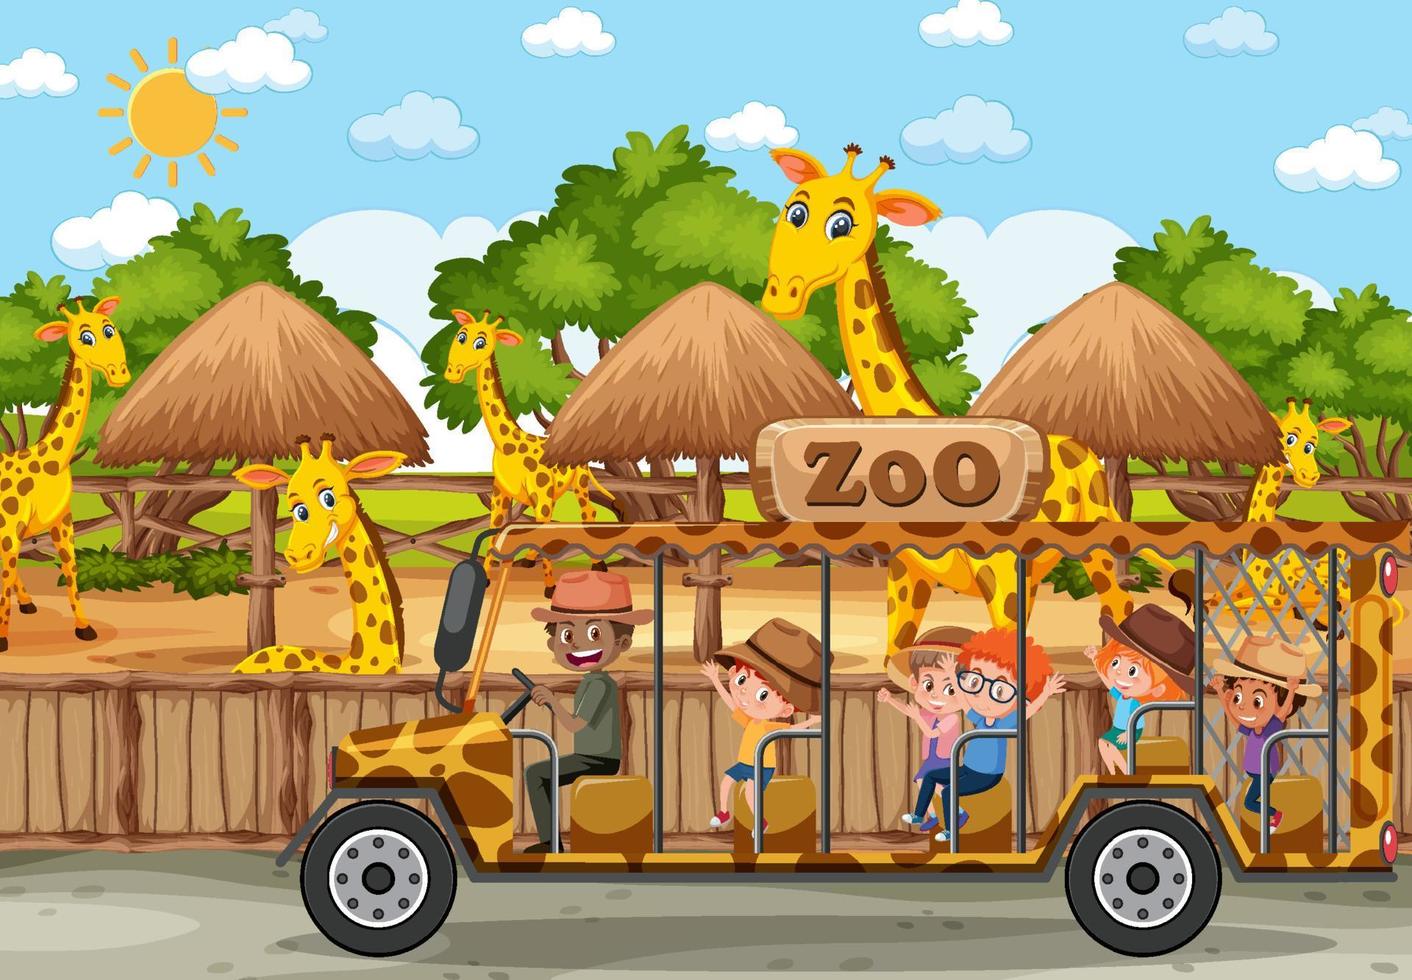 bambini in automobile turistica guardando il gruppo di giraffe nella scena dello zoo vettore